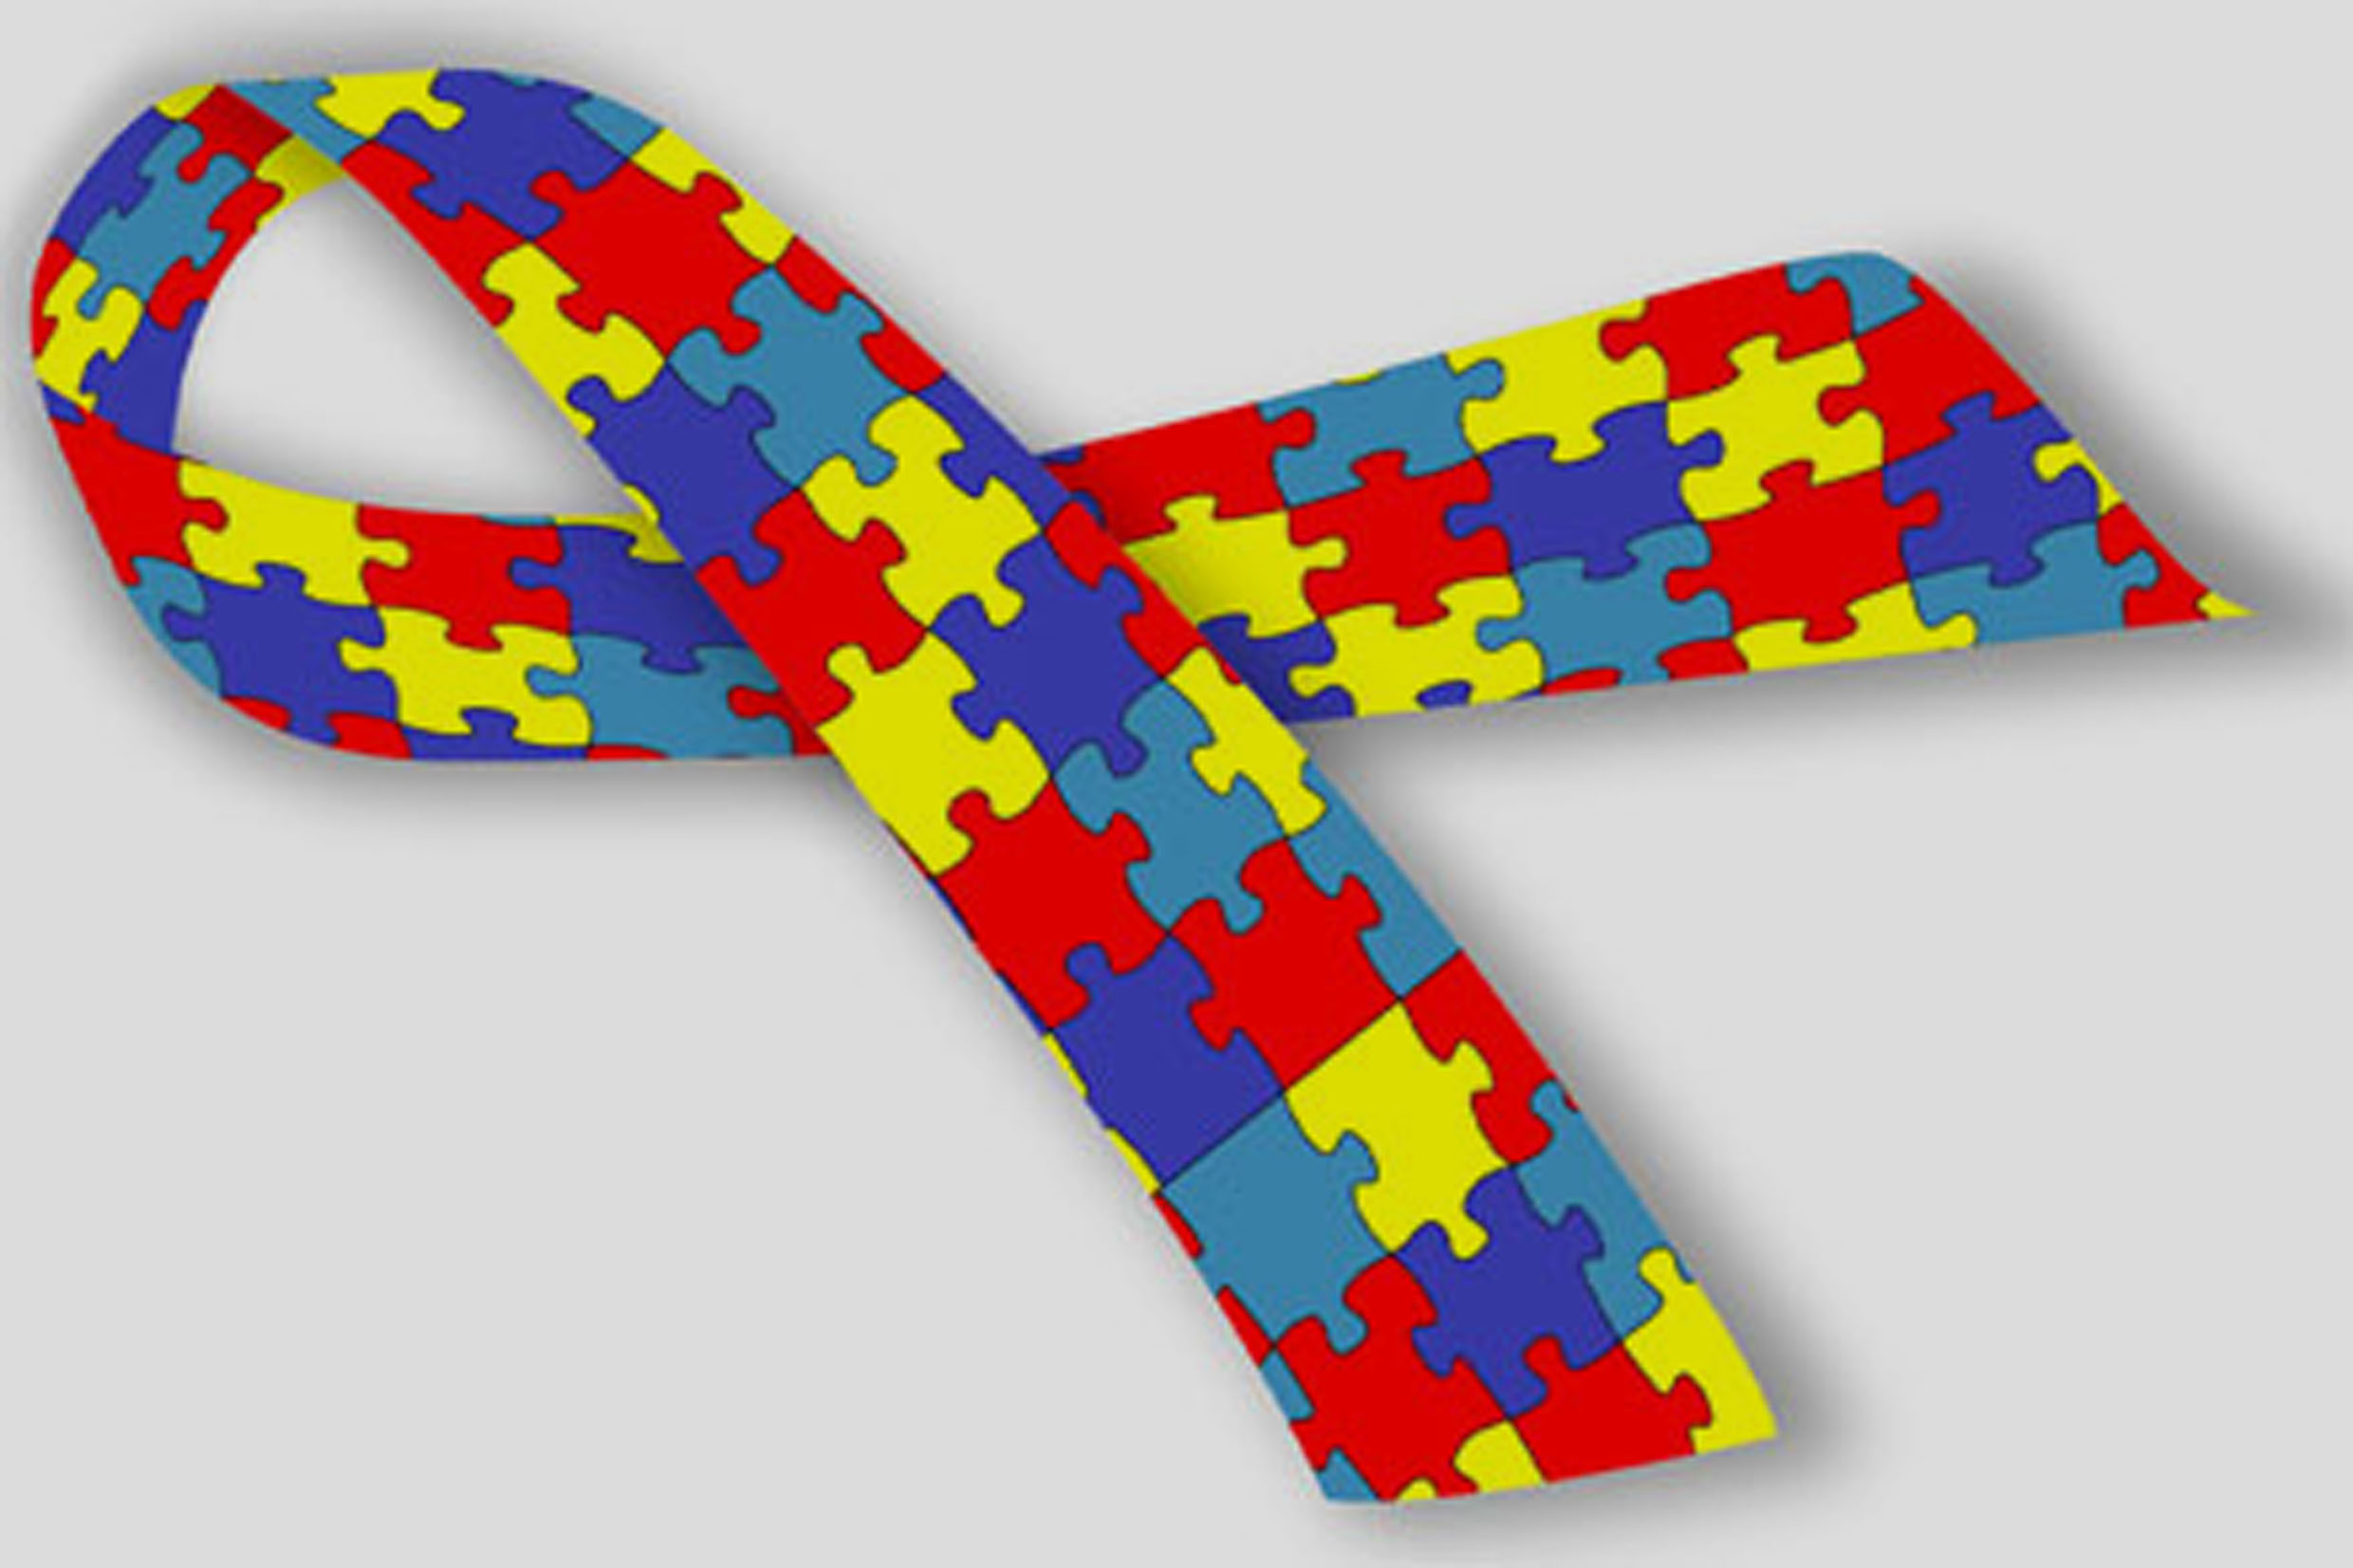 crianças do dia mundial do autismo com quebra-cabeça de fita na